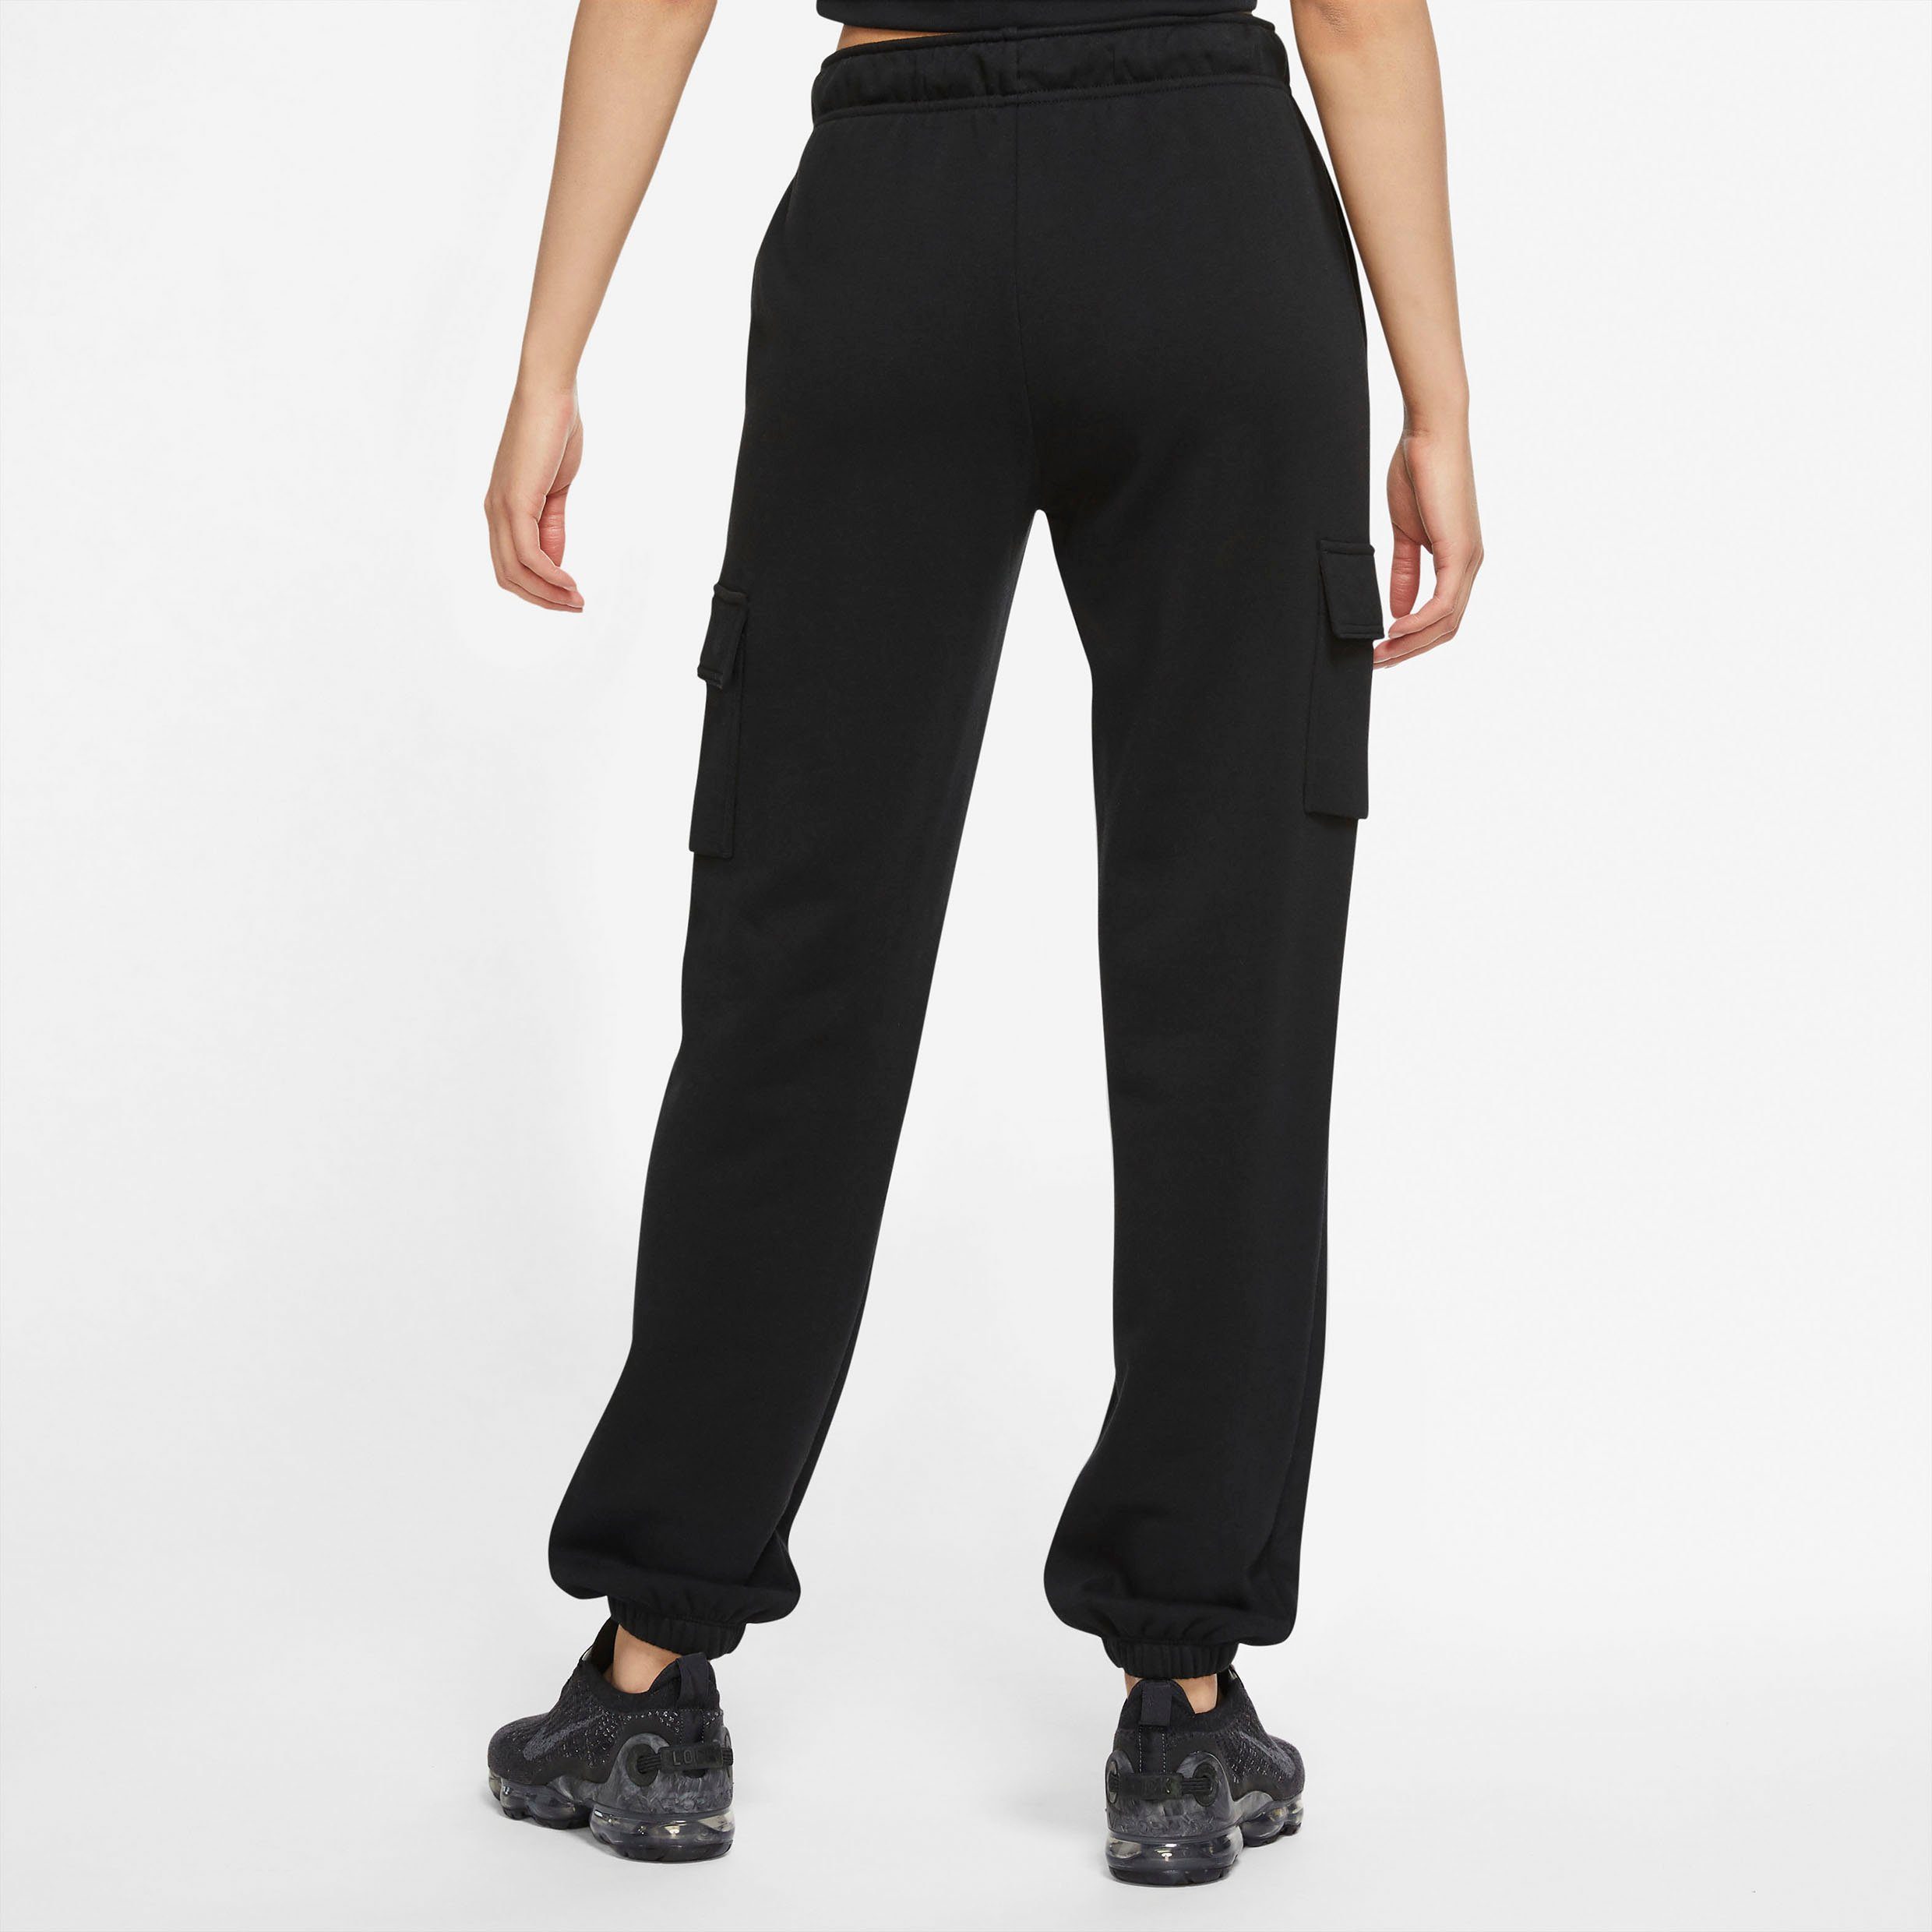 Nike Sportswear Jogginghose ESSENTIALS WOMENS PANTS schwarz